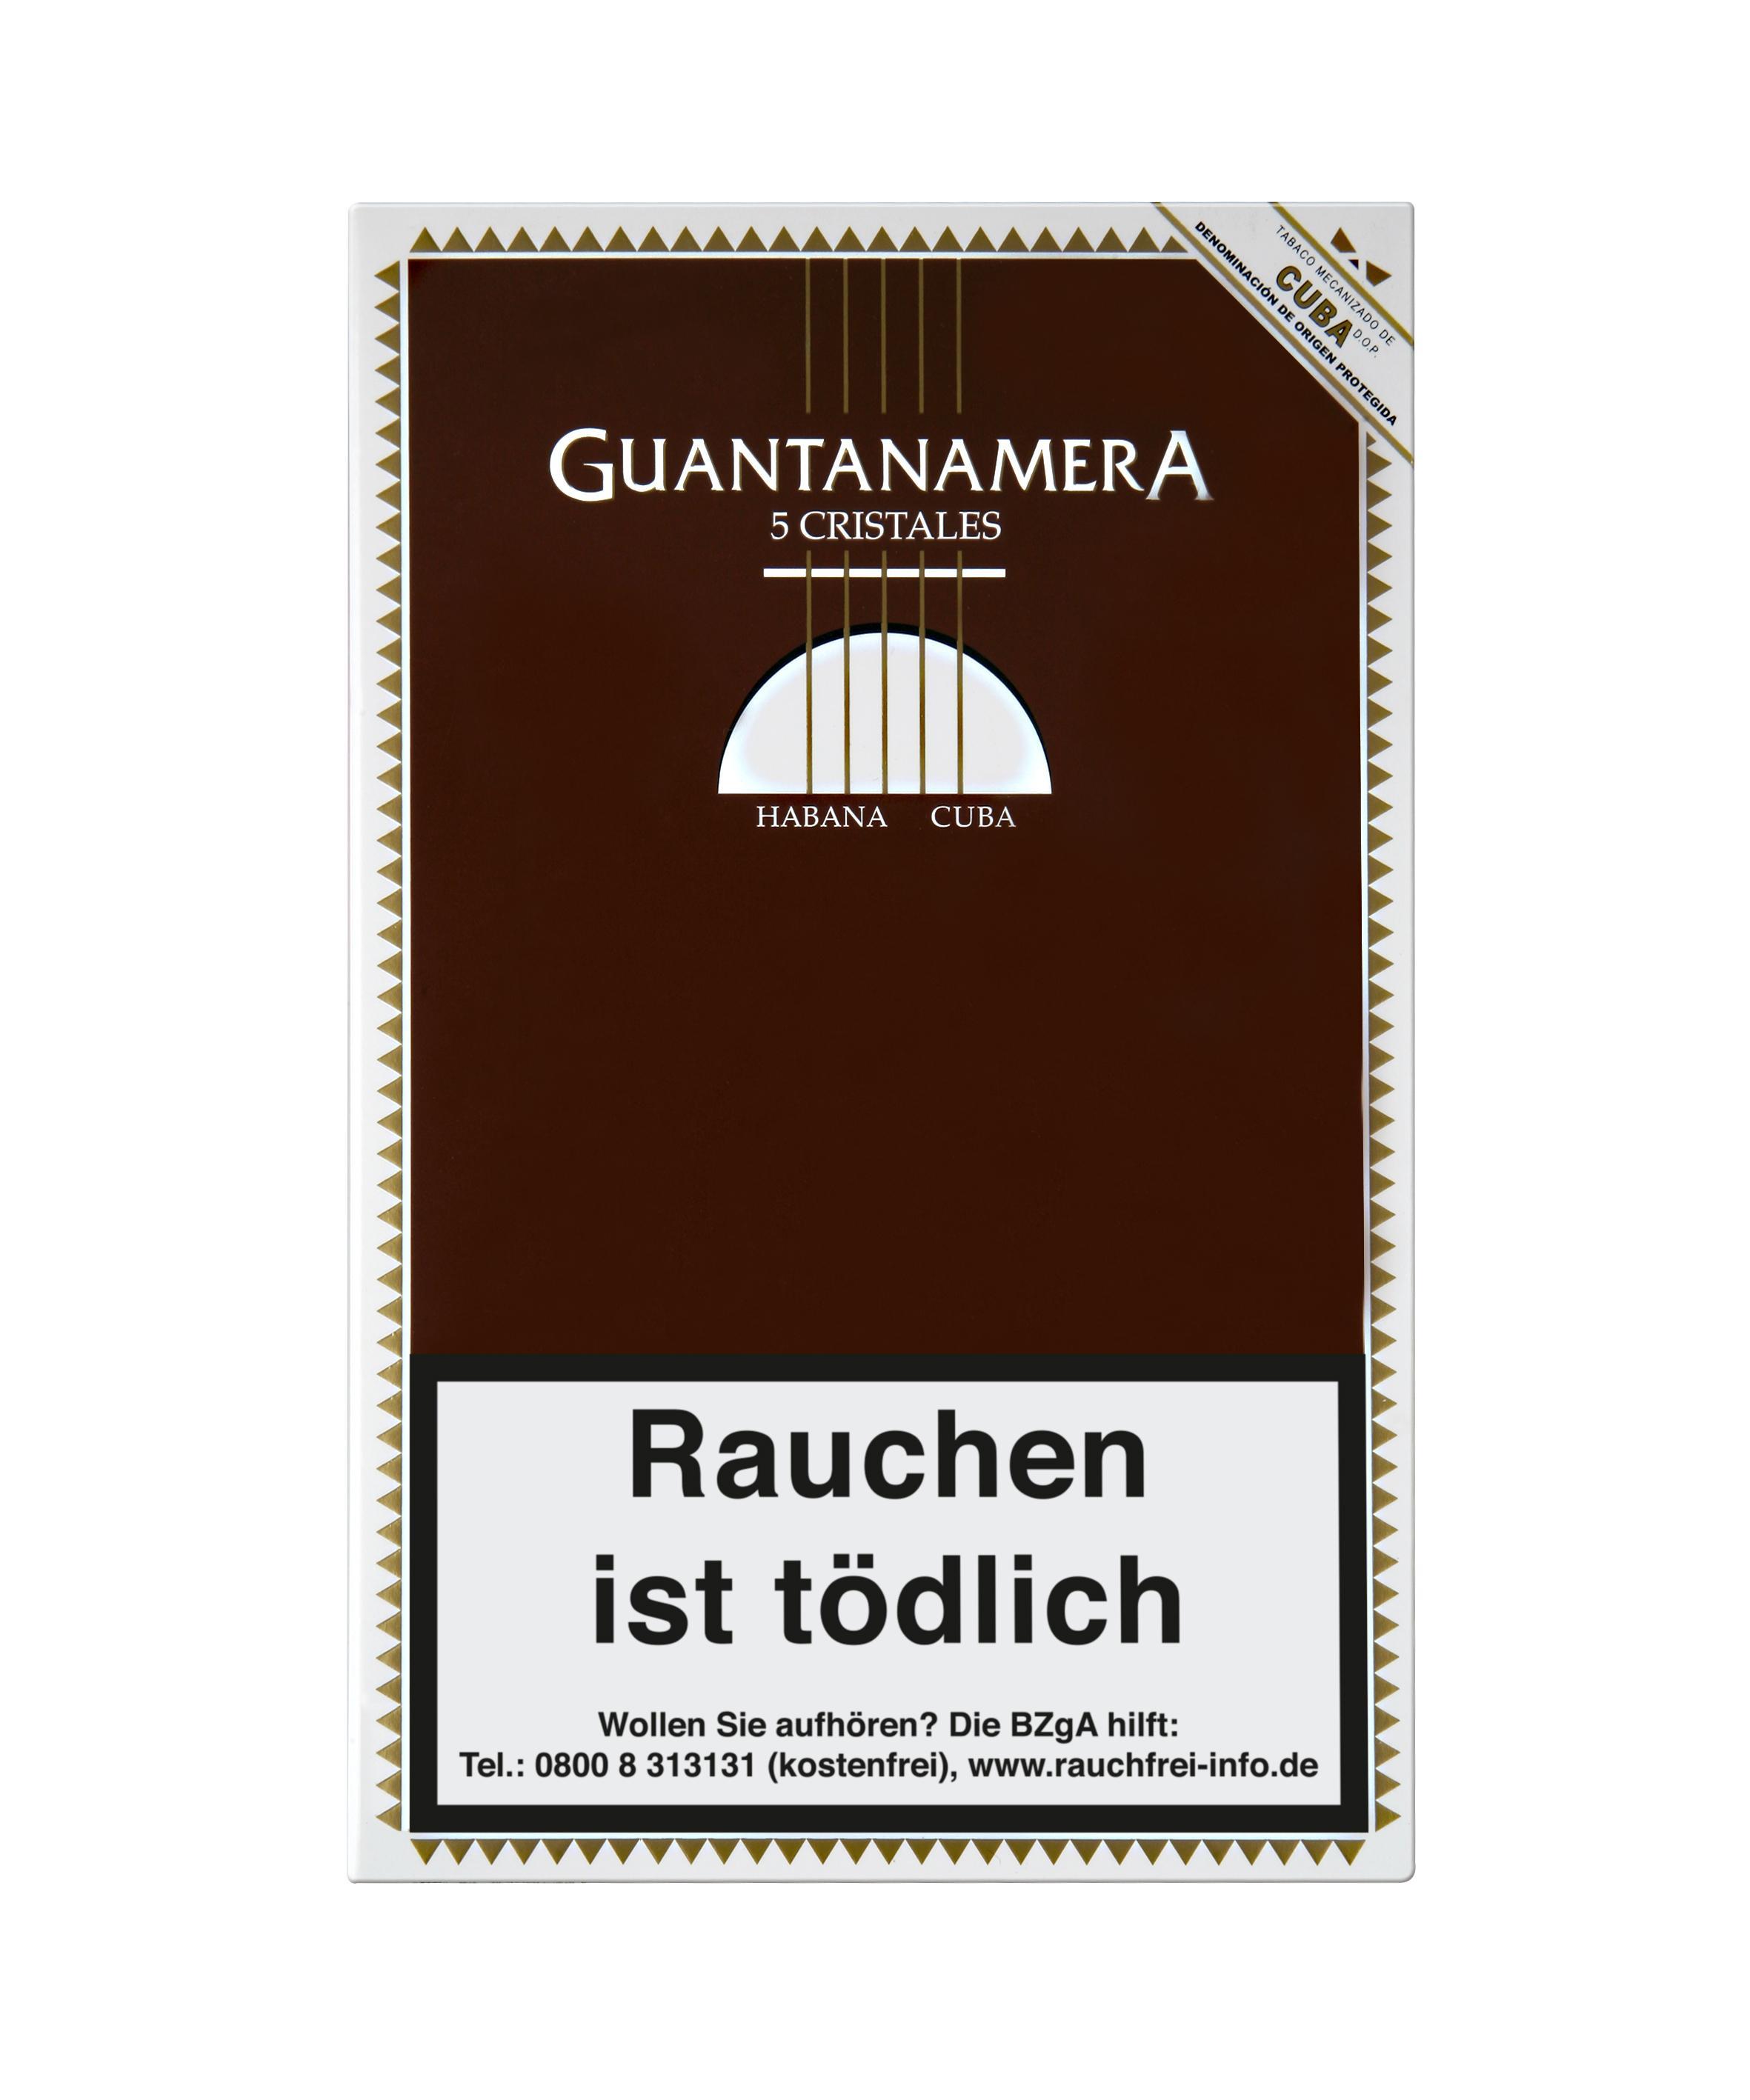 Guantanamera Cristales 1 x 5 Zigarren